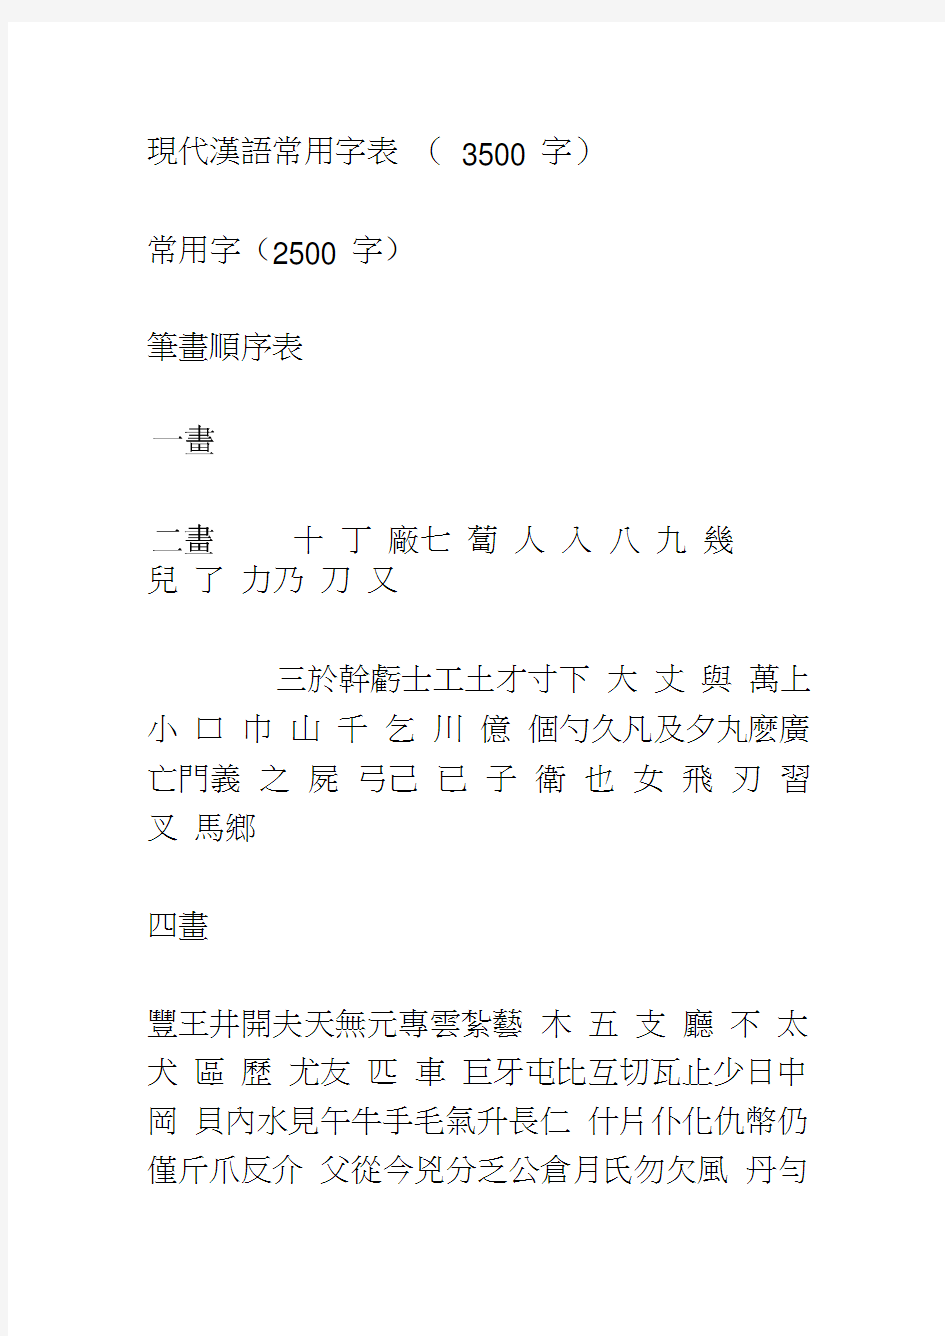 3500个常用汉字及繁体字表